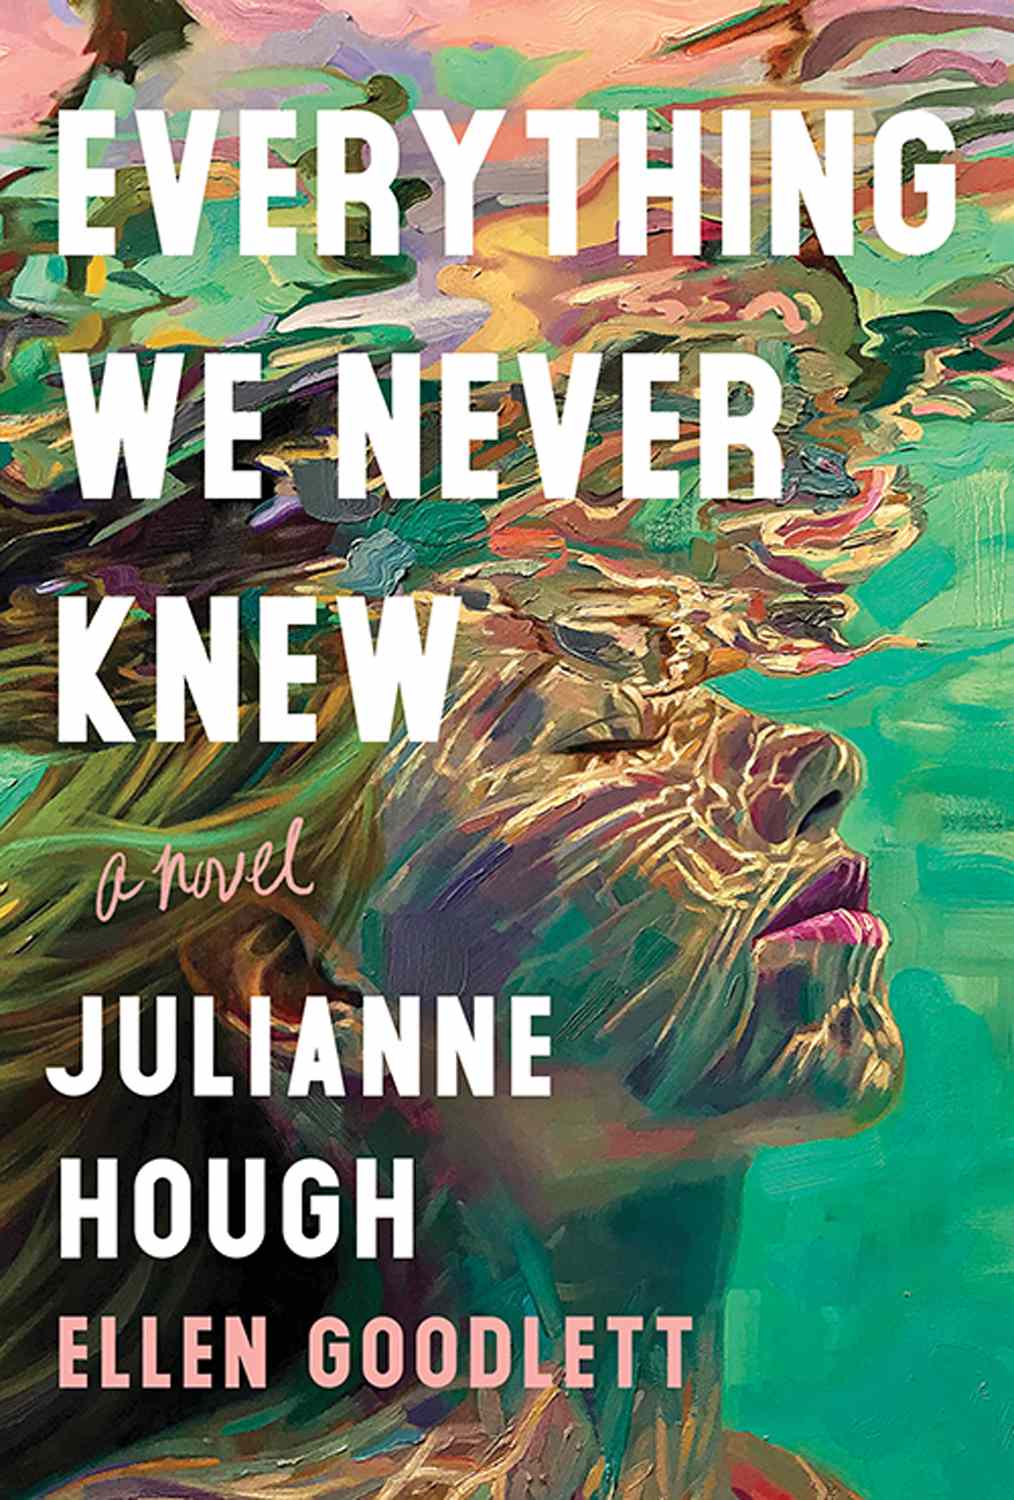 Julianne Hough book